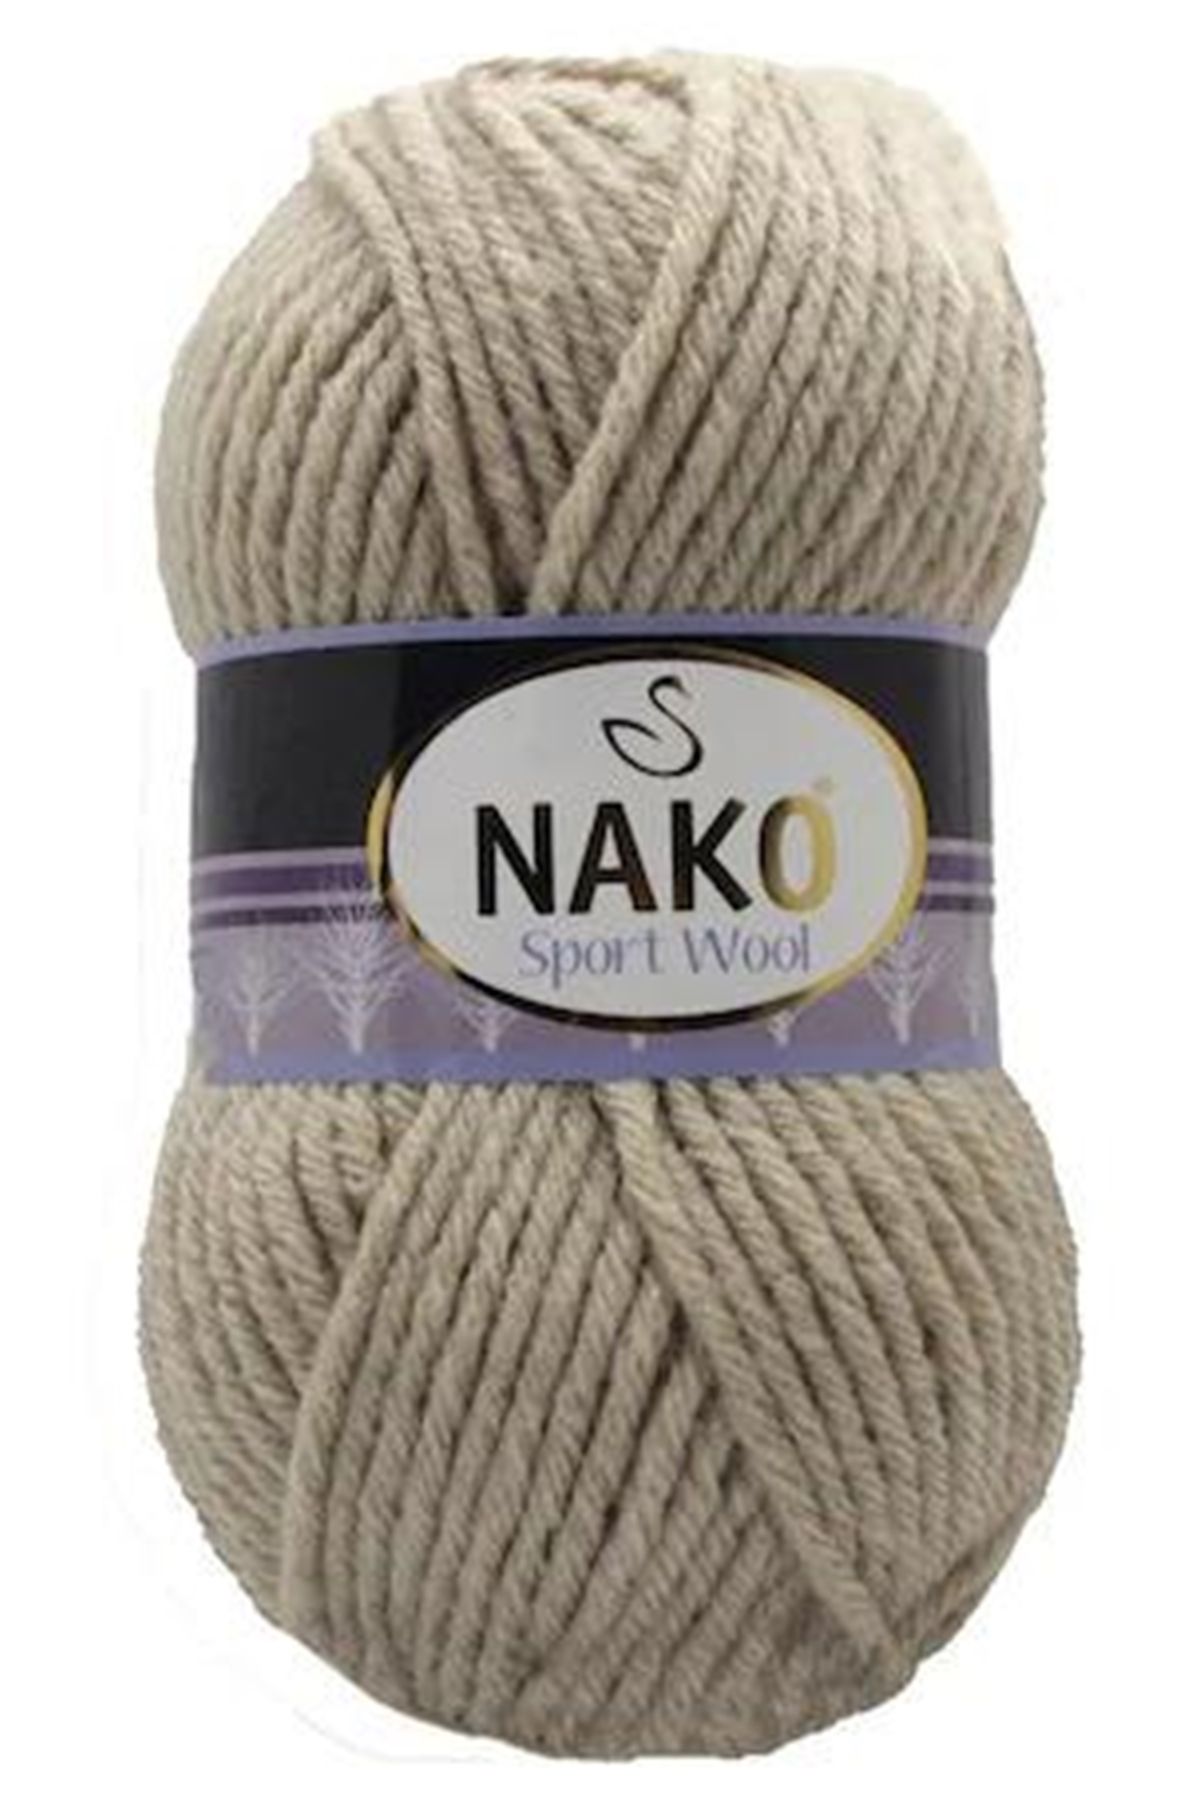 Nako Sport Wool 13495 Yünlü Atkı Bere Battaniye Ipi 5 Yumak Ponpon Hediyeli